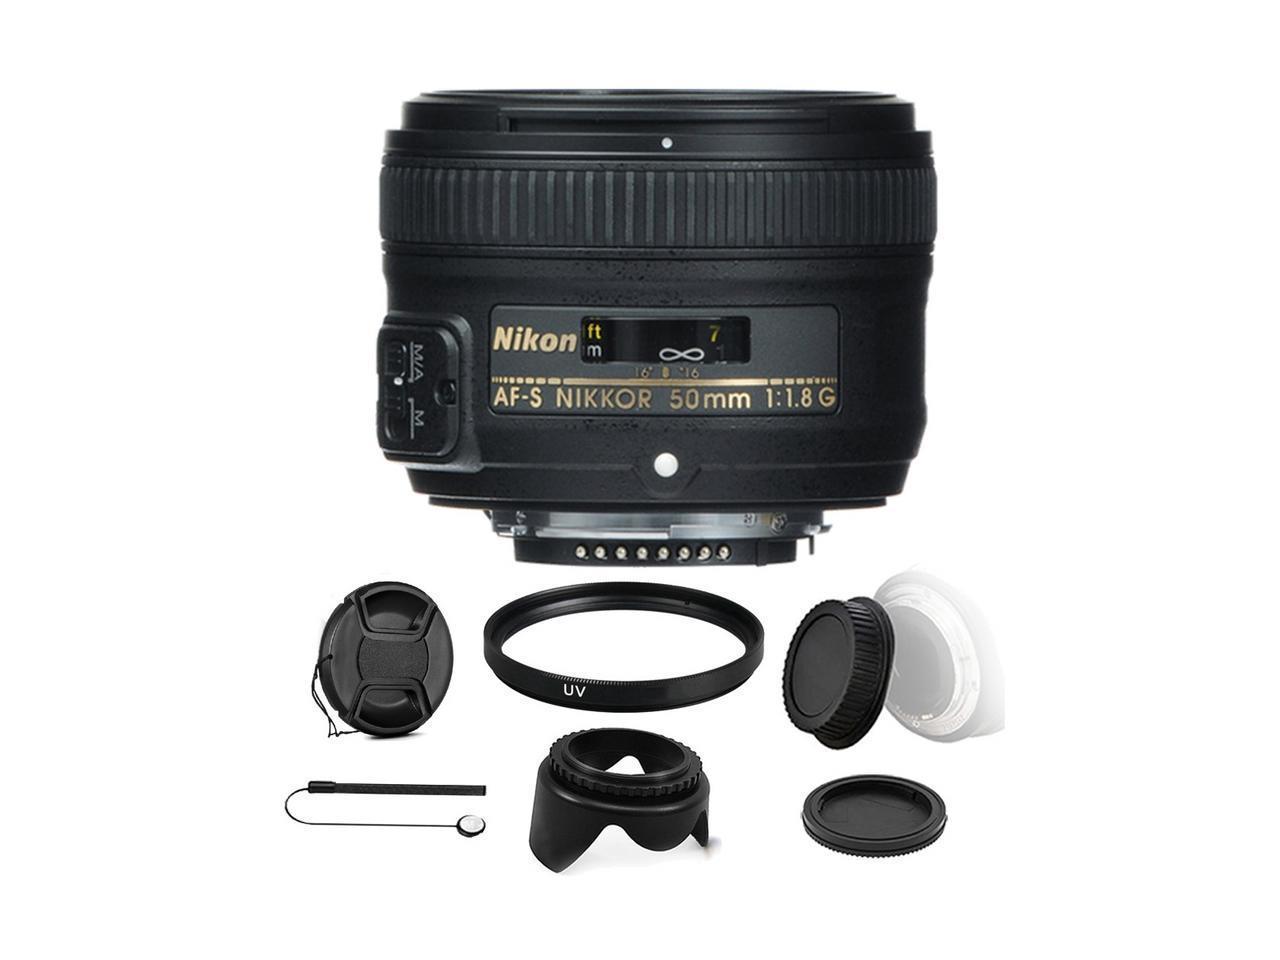 Nikon Af S Fx Nikkor 50mm F 1 8g Lens And Accessory Kit For Nikon Dslr Cameras International Version Newegg Com